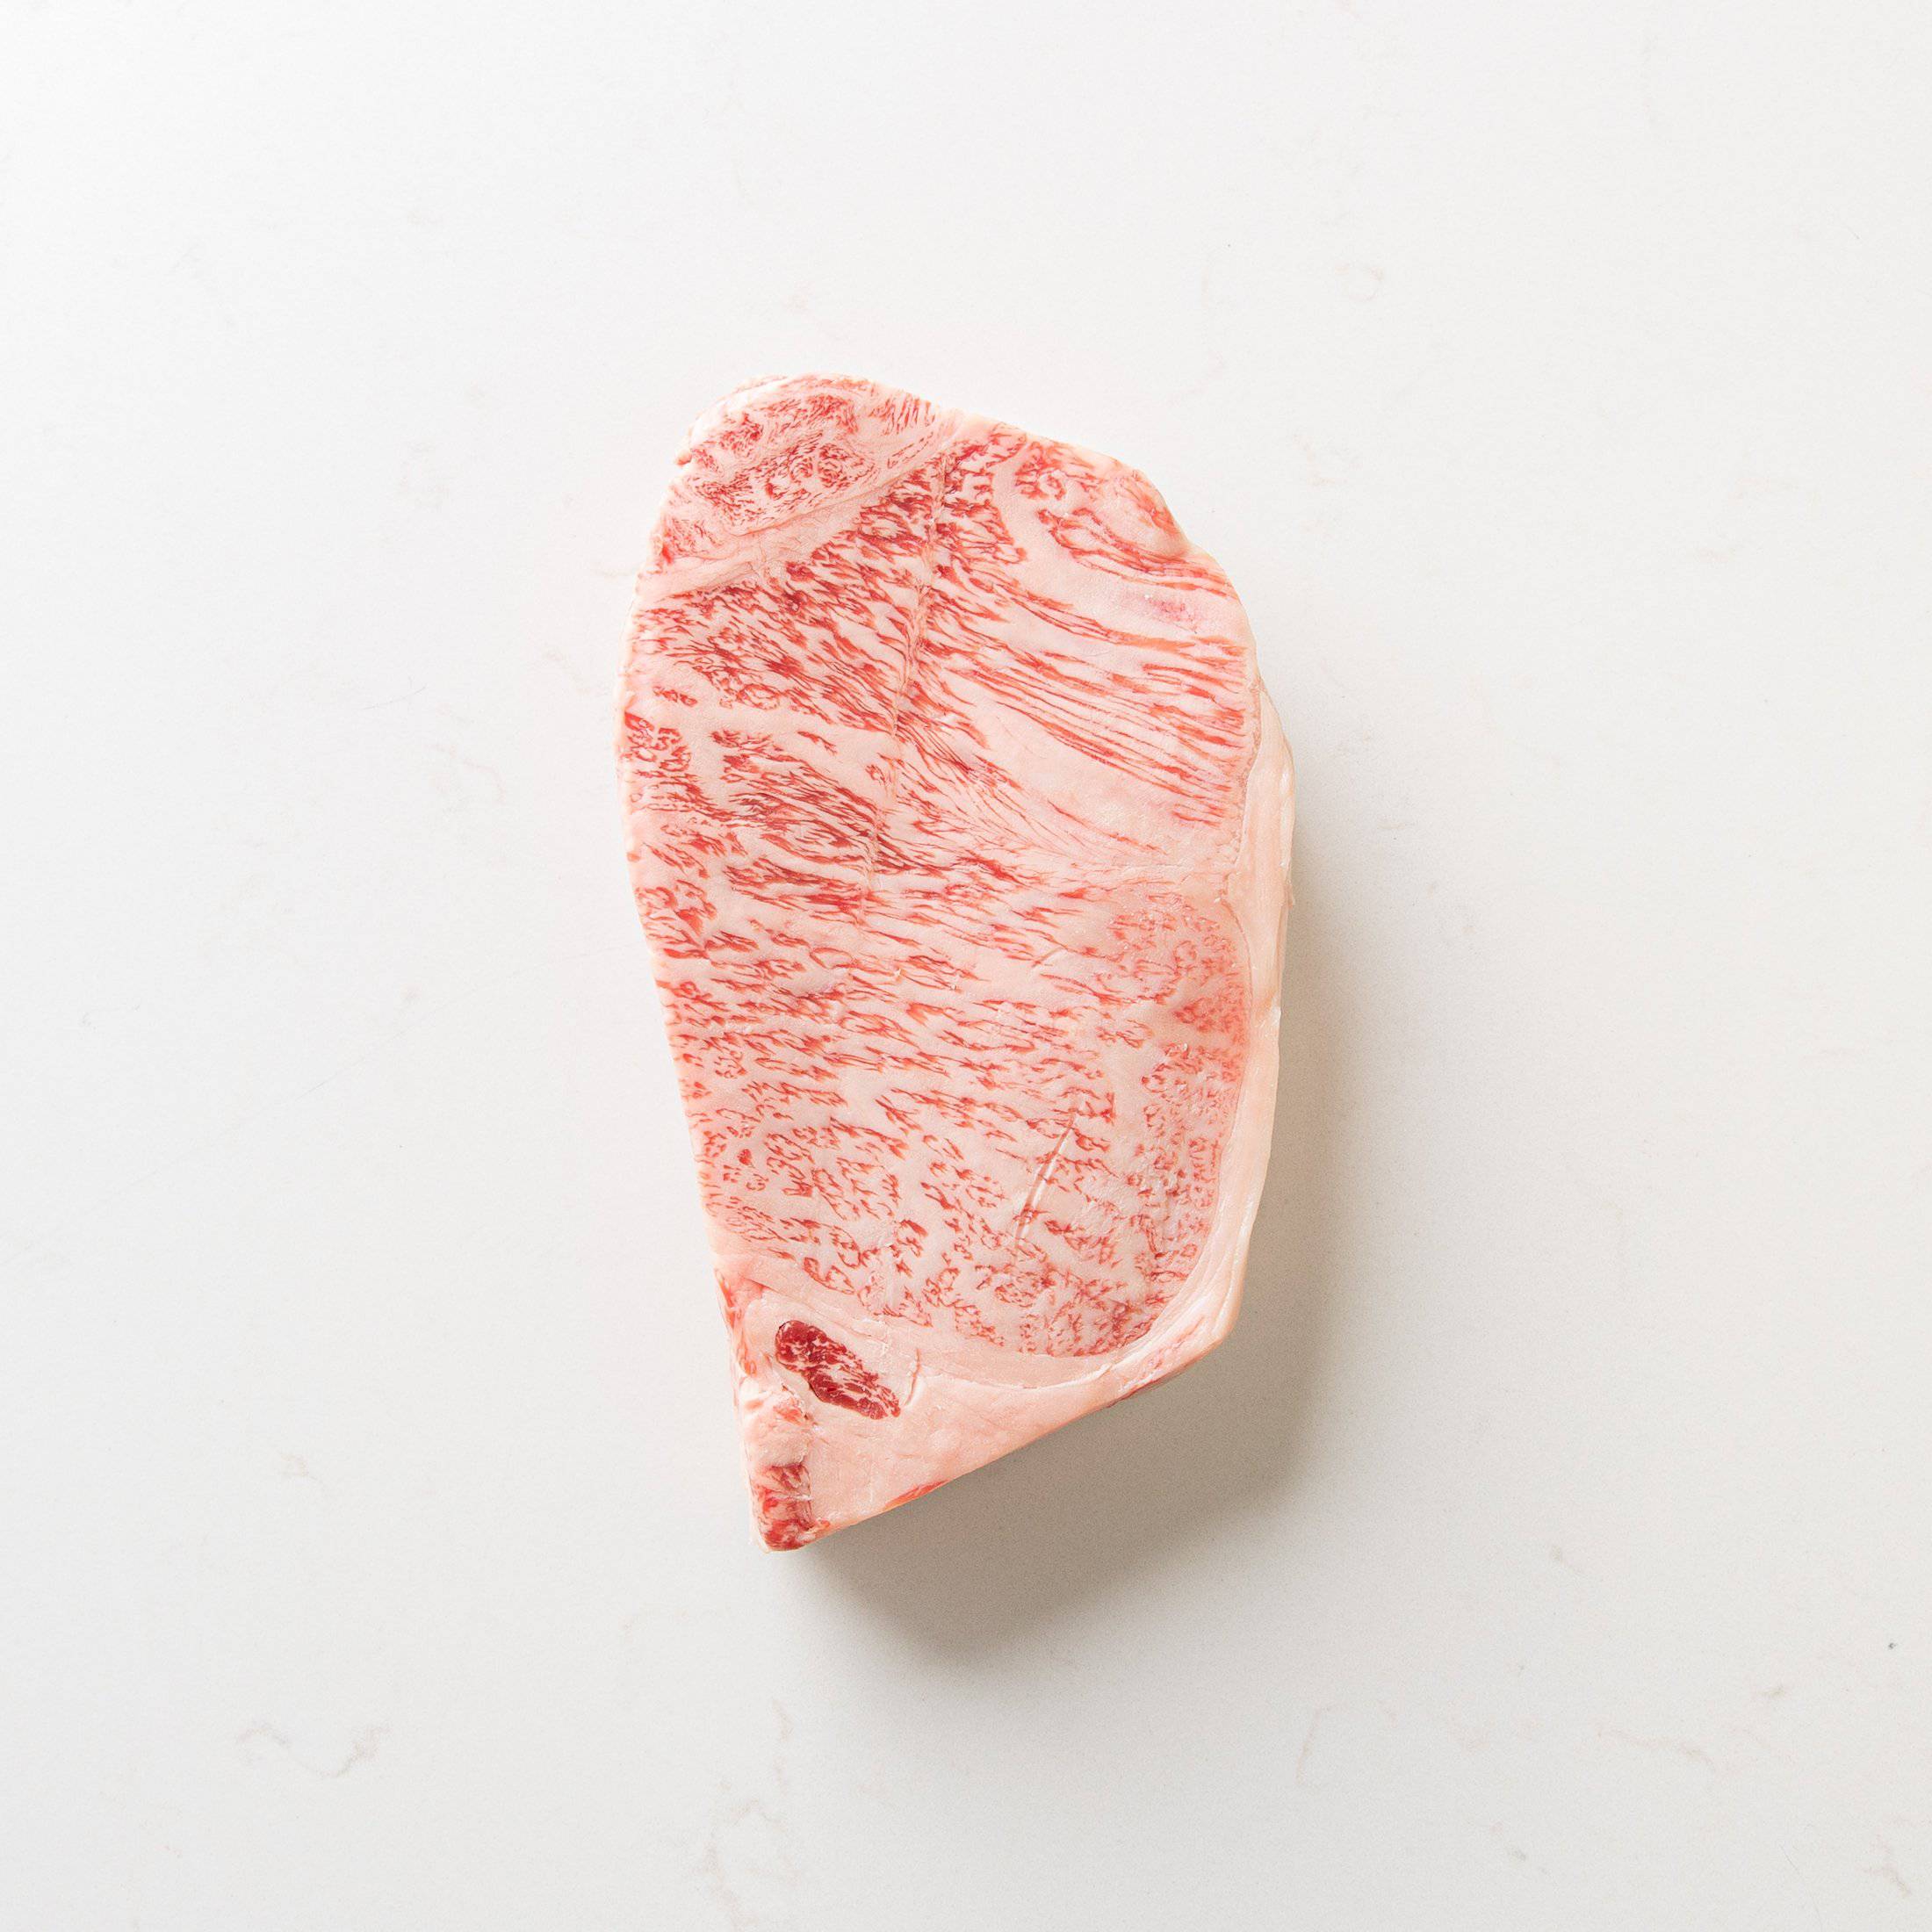 Japanese A5 Wagyu Striploin Steak